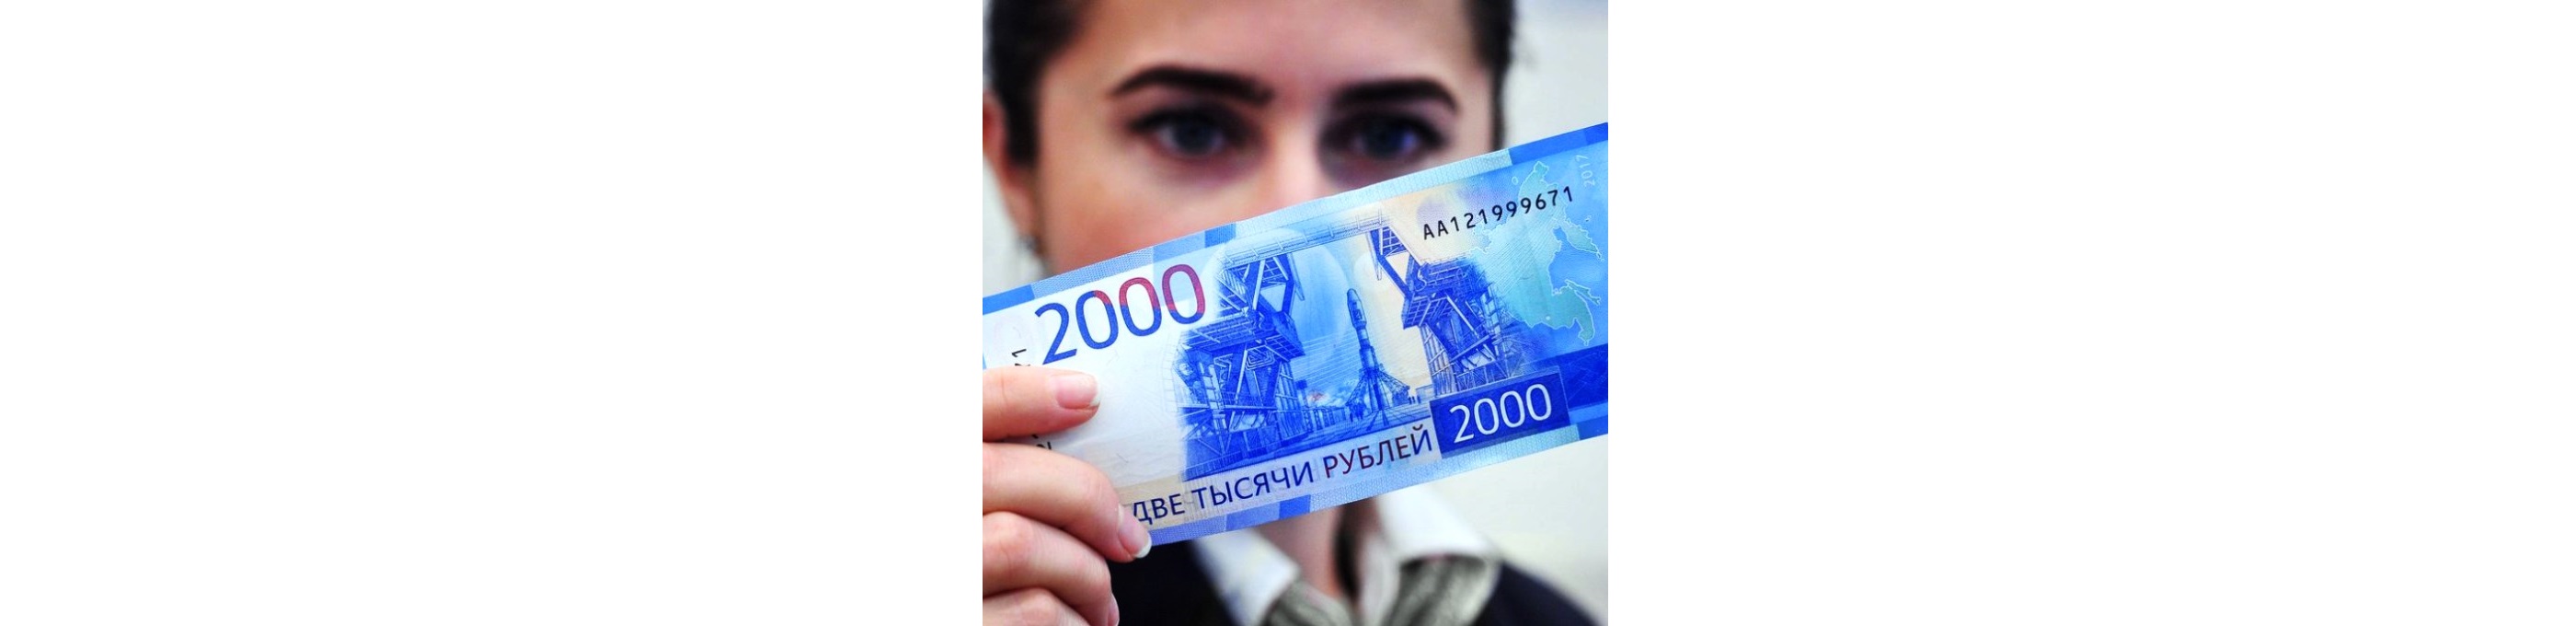 По последним данным, фальшивомонетчики начали активно подделывать новые купюры с номиналом в 2000 рублей, которые были введены в оборот в 2017 году